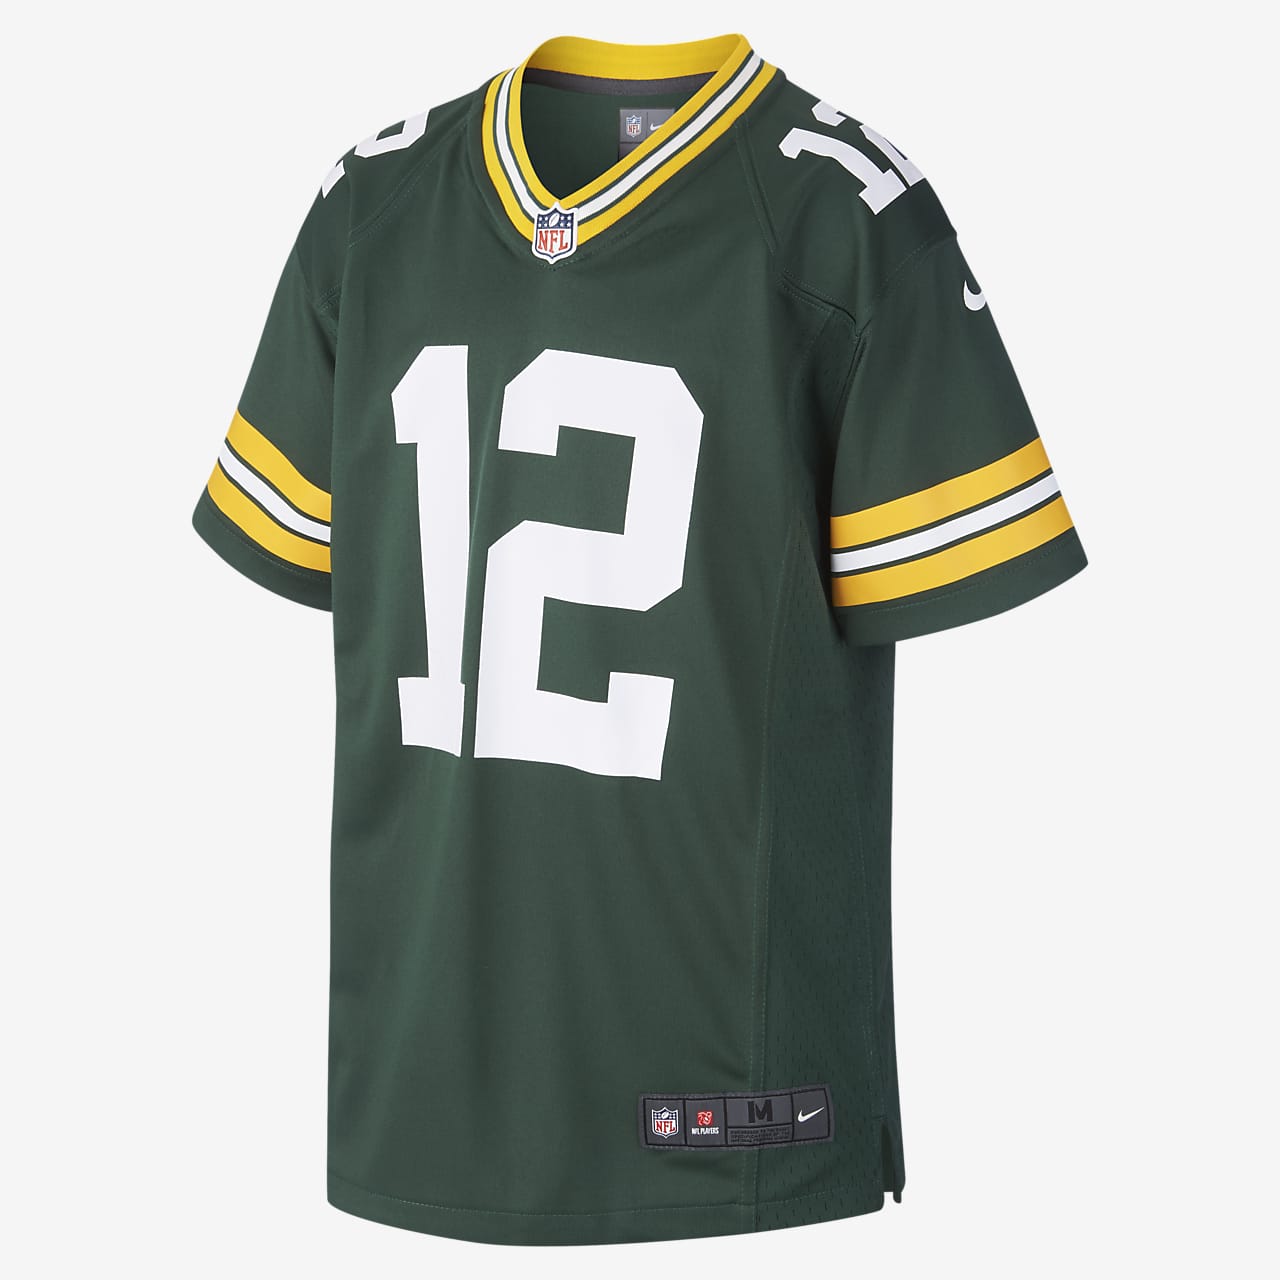 NFL Green Bay Packers Game Jersey (Aaron Rodgers)-fodboldtrøje til store børn